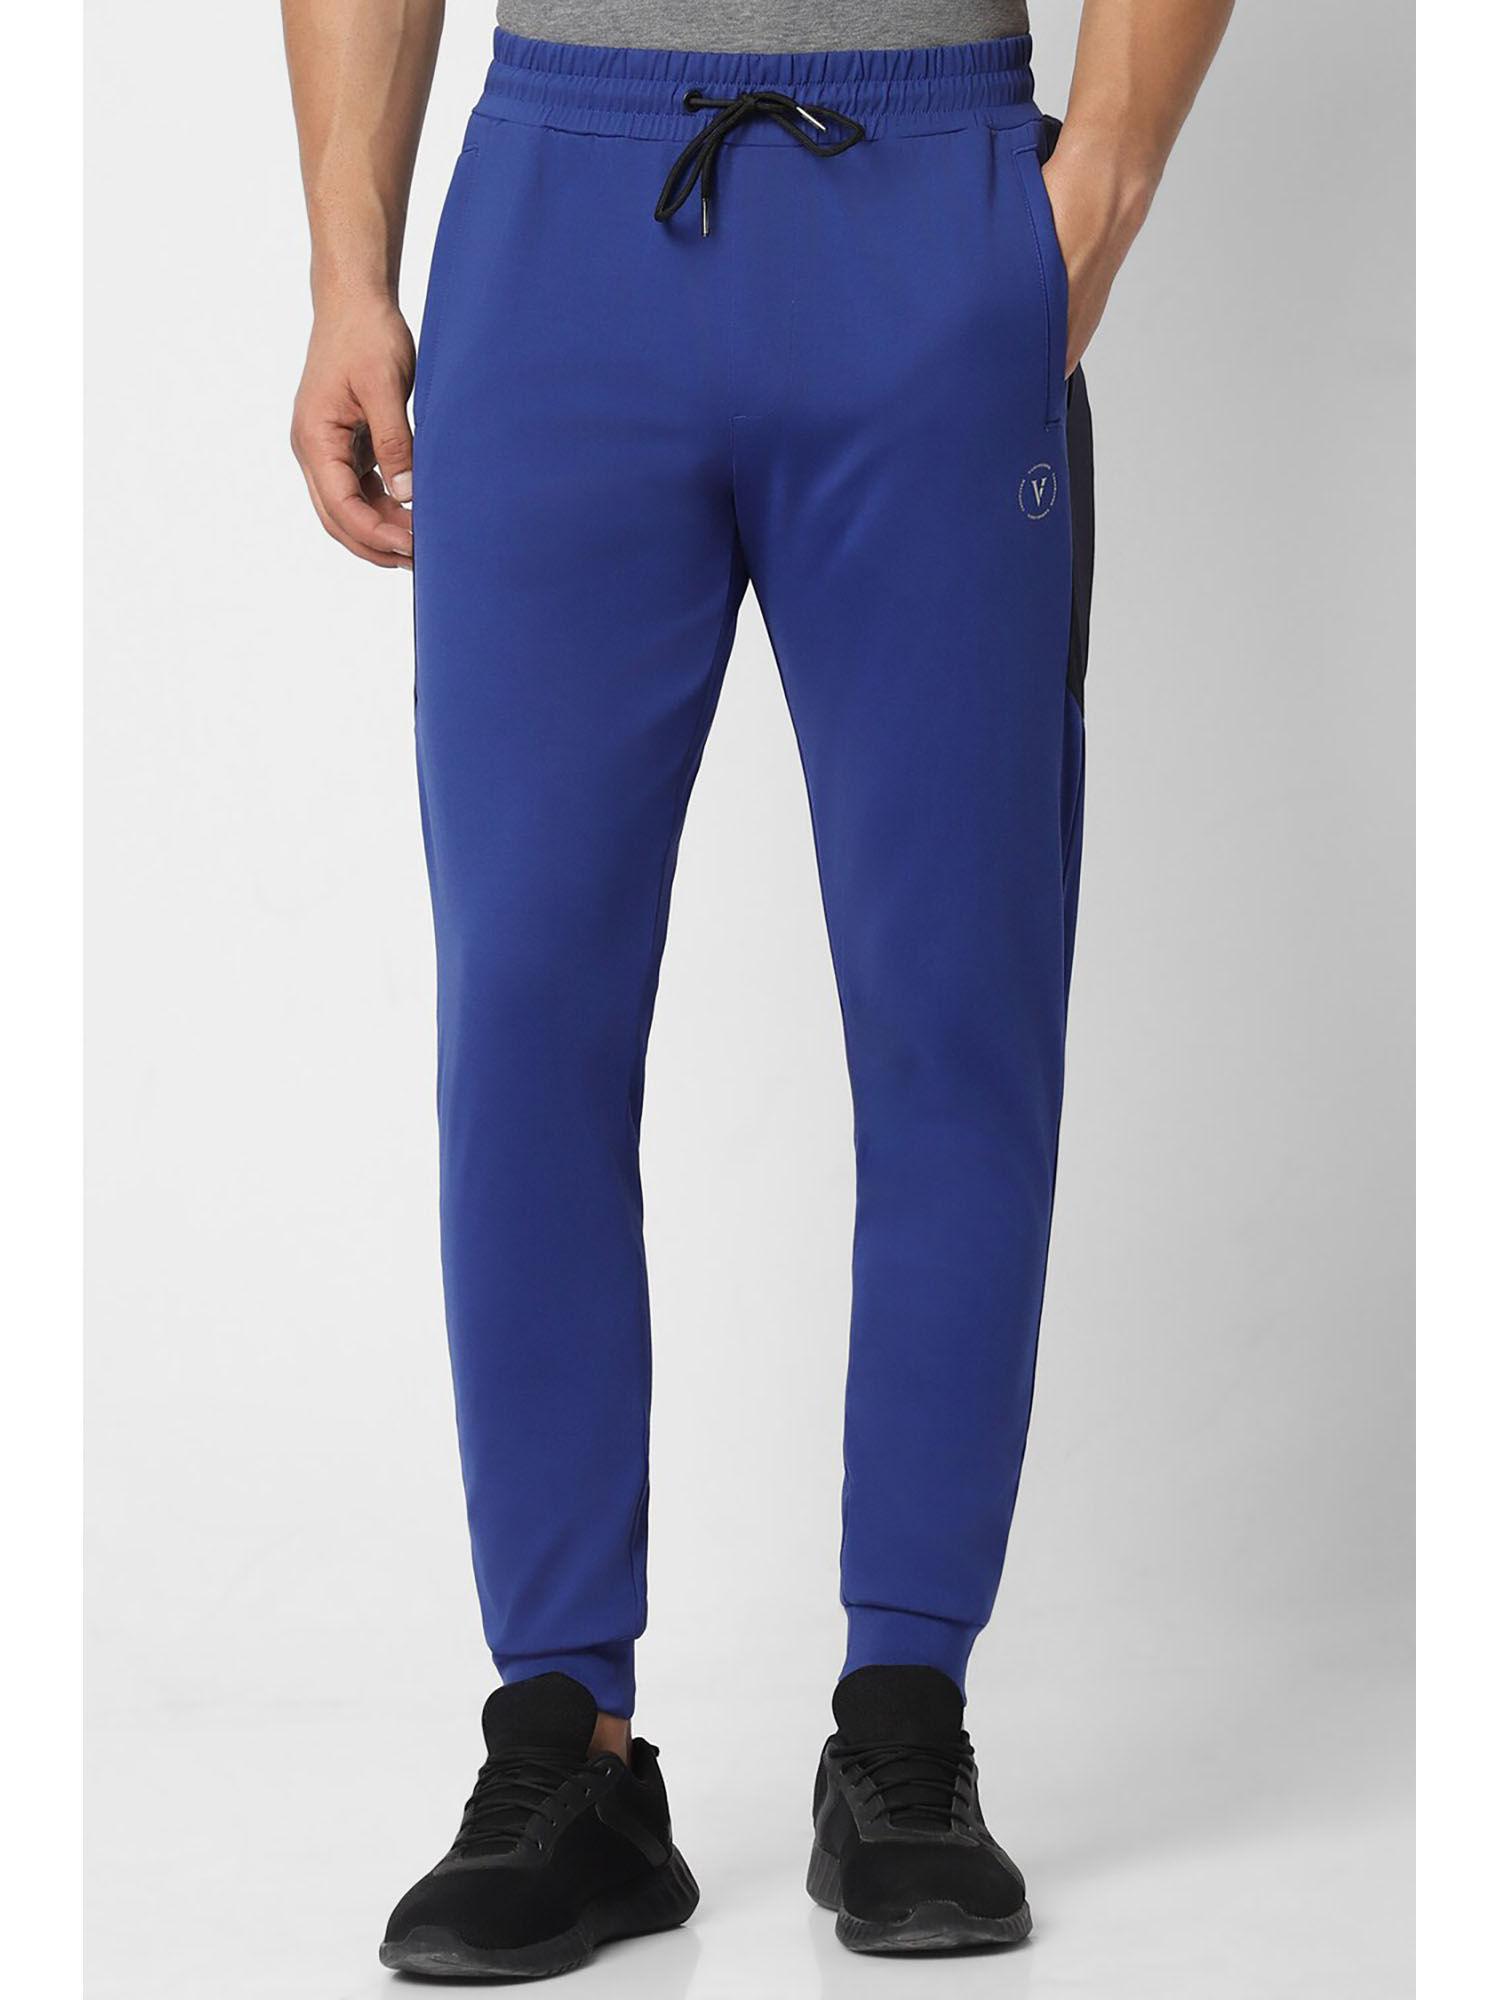 men-blue-solid-casual-jogger-pants